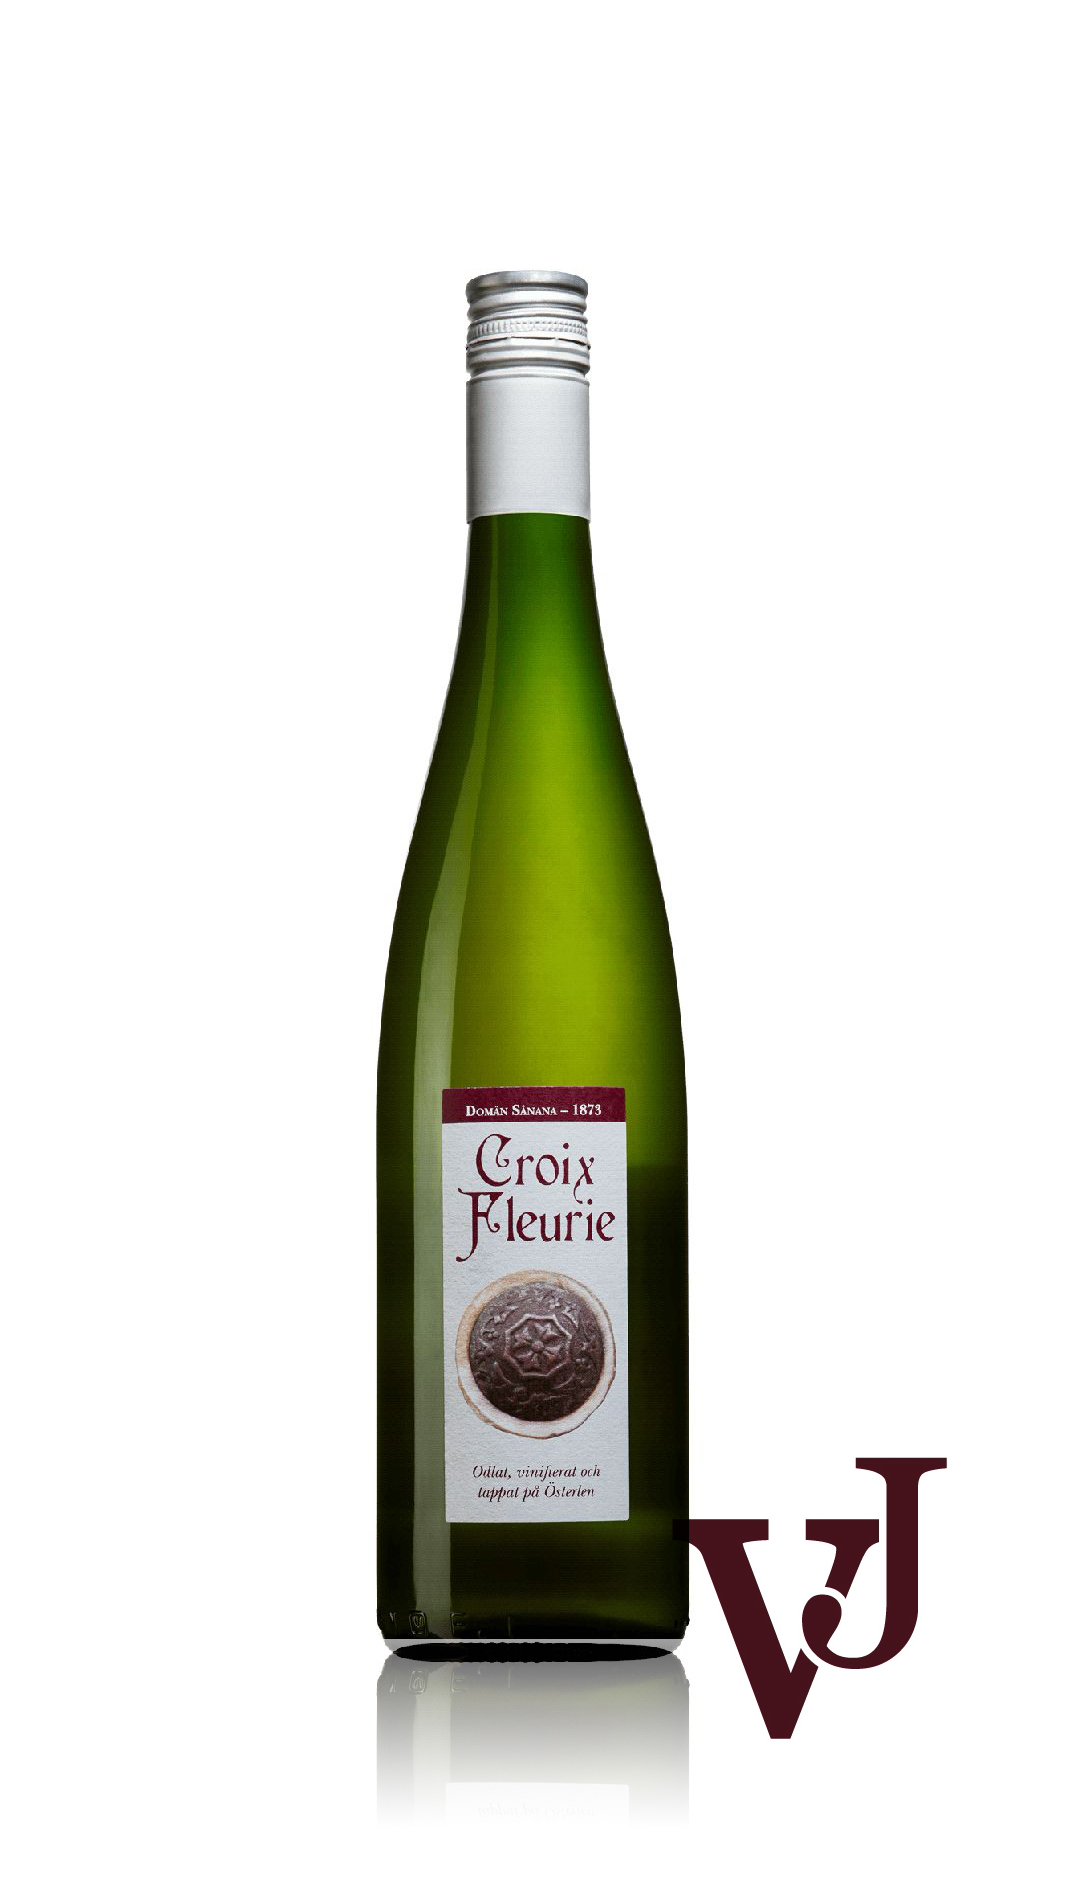 Vitt Vin - Croix Fleurie Souvignier Gris 2021 artikel nummer 3987601 från producenten Domän Sånana från Sverige.